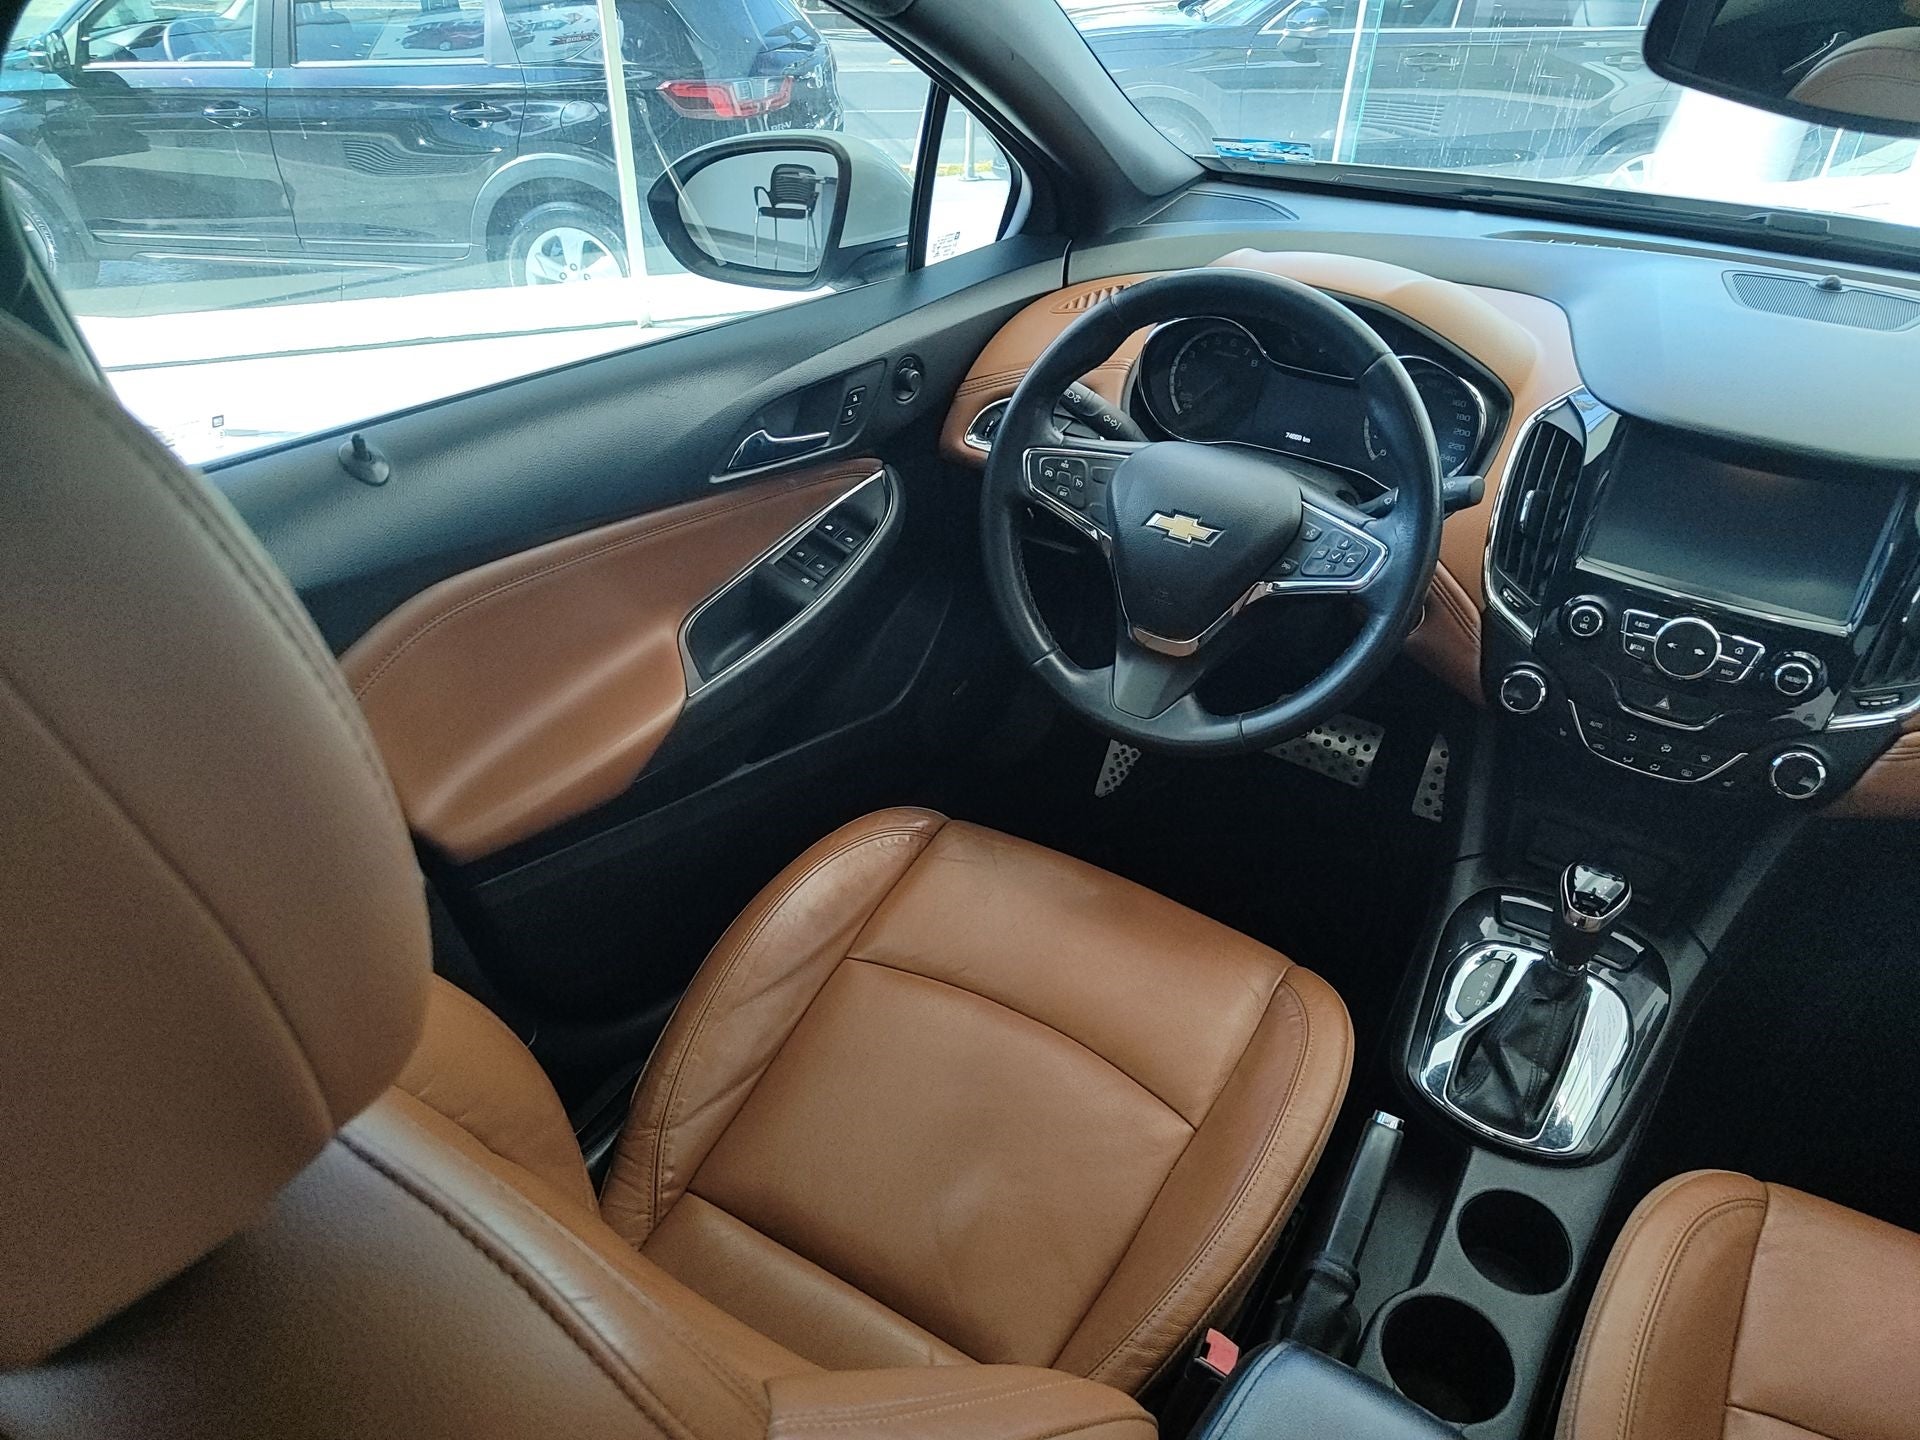 2017 Chevrolet Cruze 1.4 Premier At